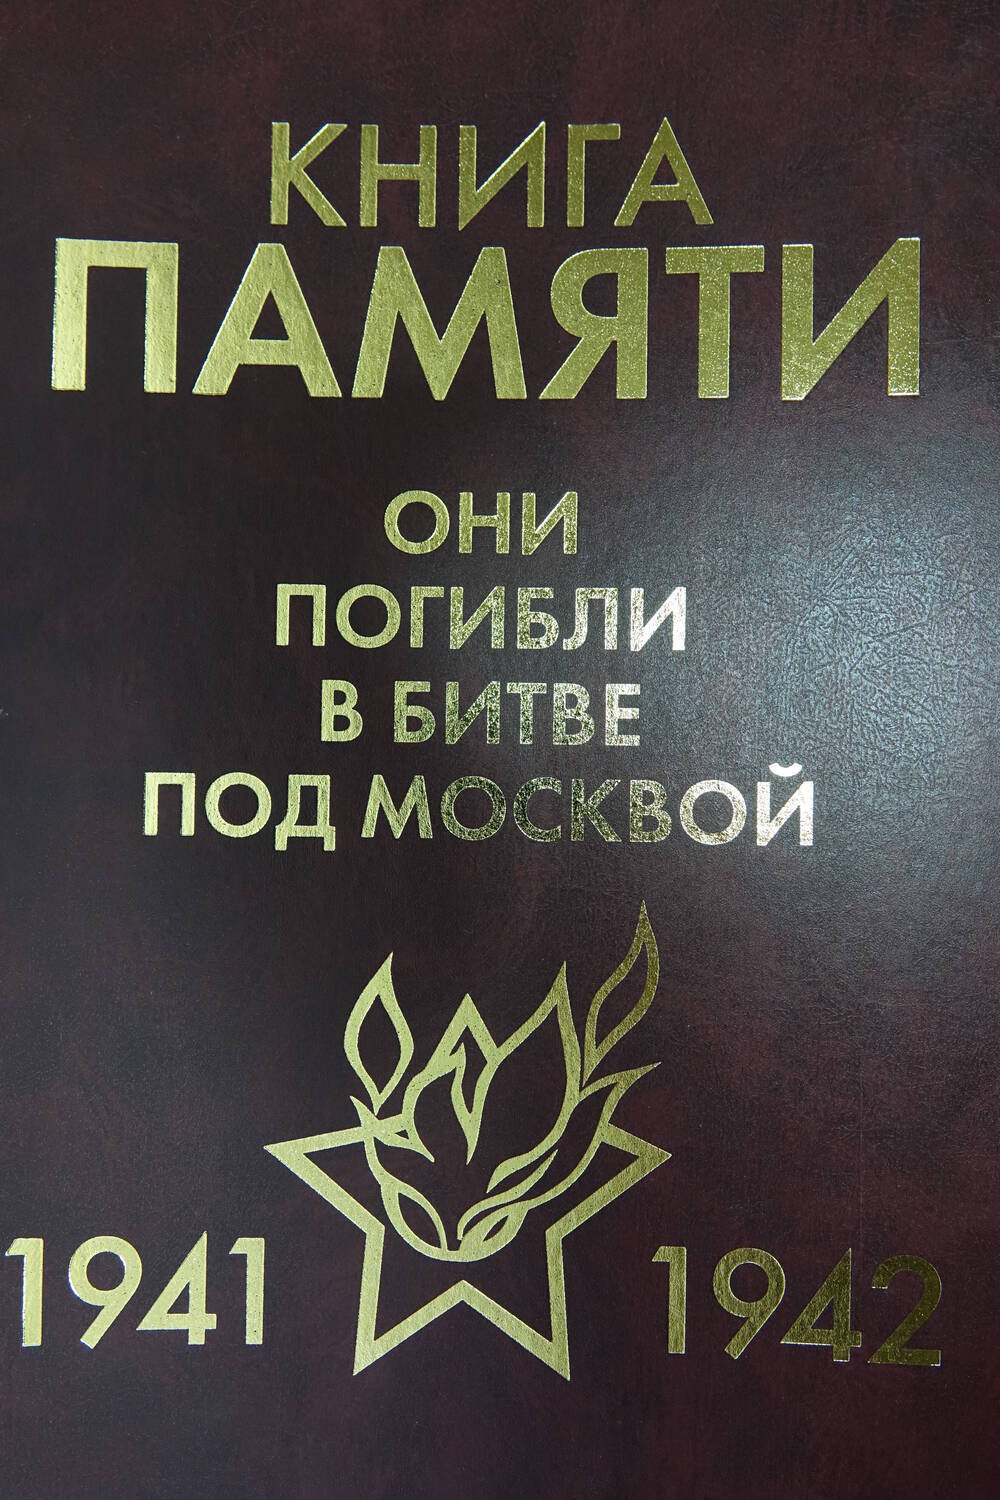 Книга Памяти «Они погибли в битве под Москвой  1941-1942гг.» Том 2 «Б»